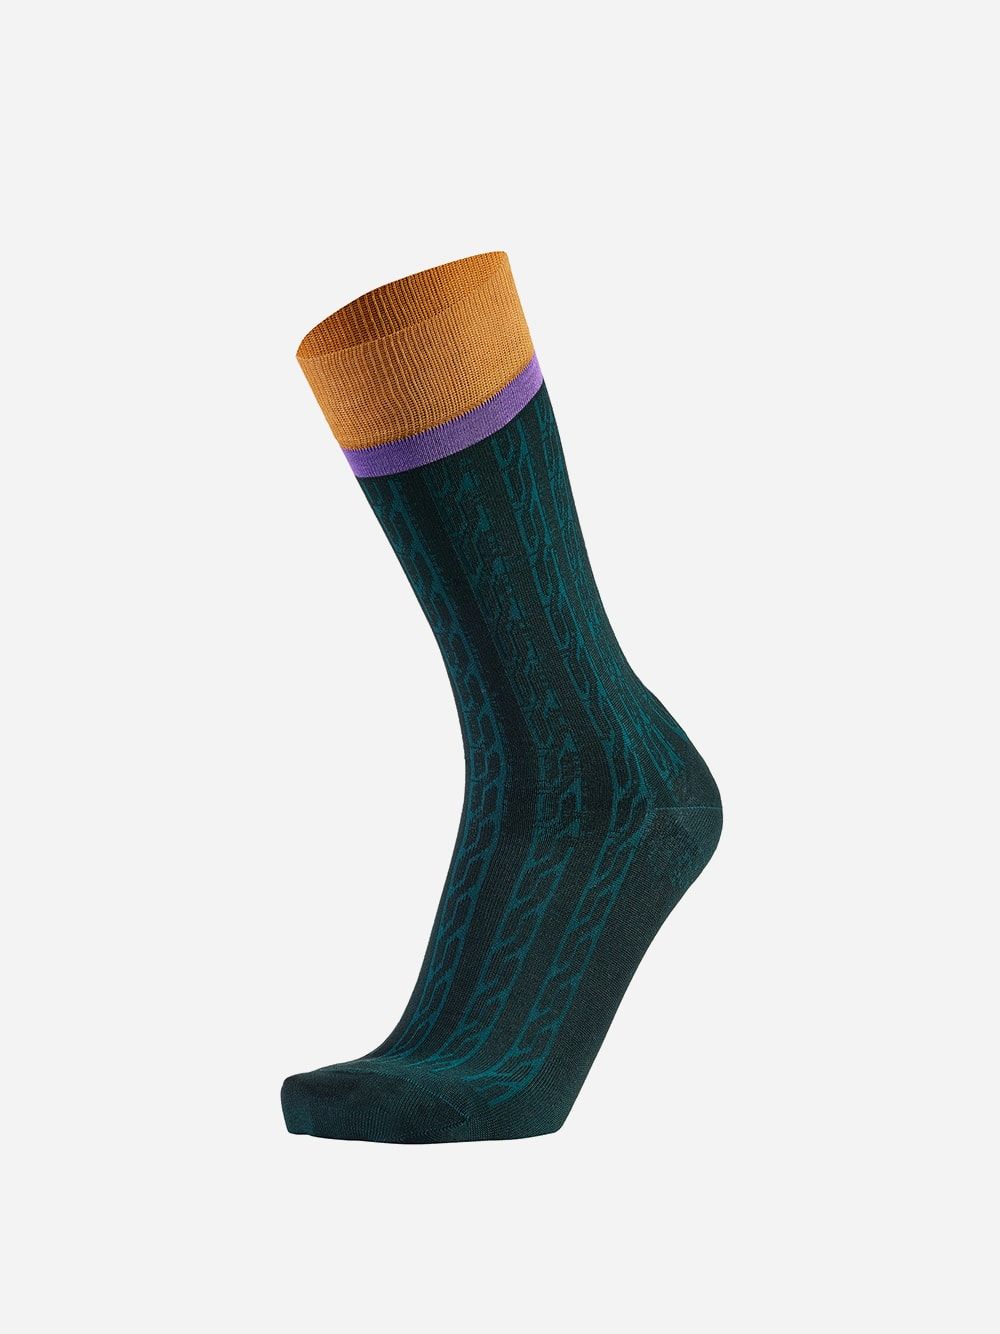 Green Socks Wicker | Westmister